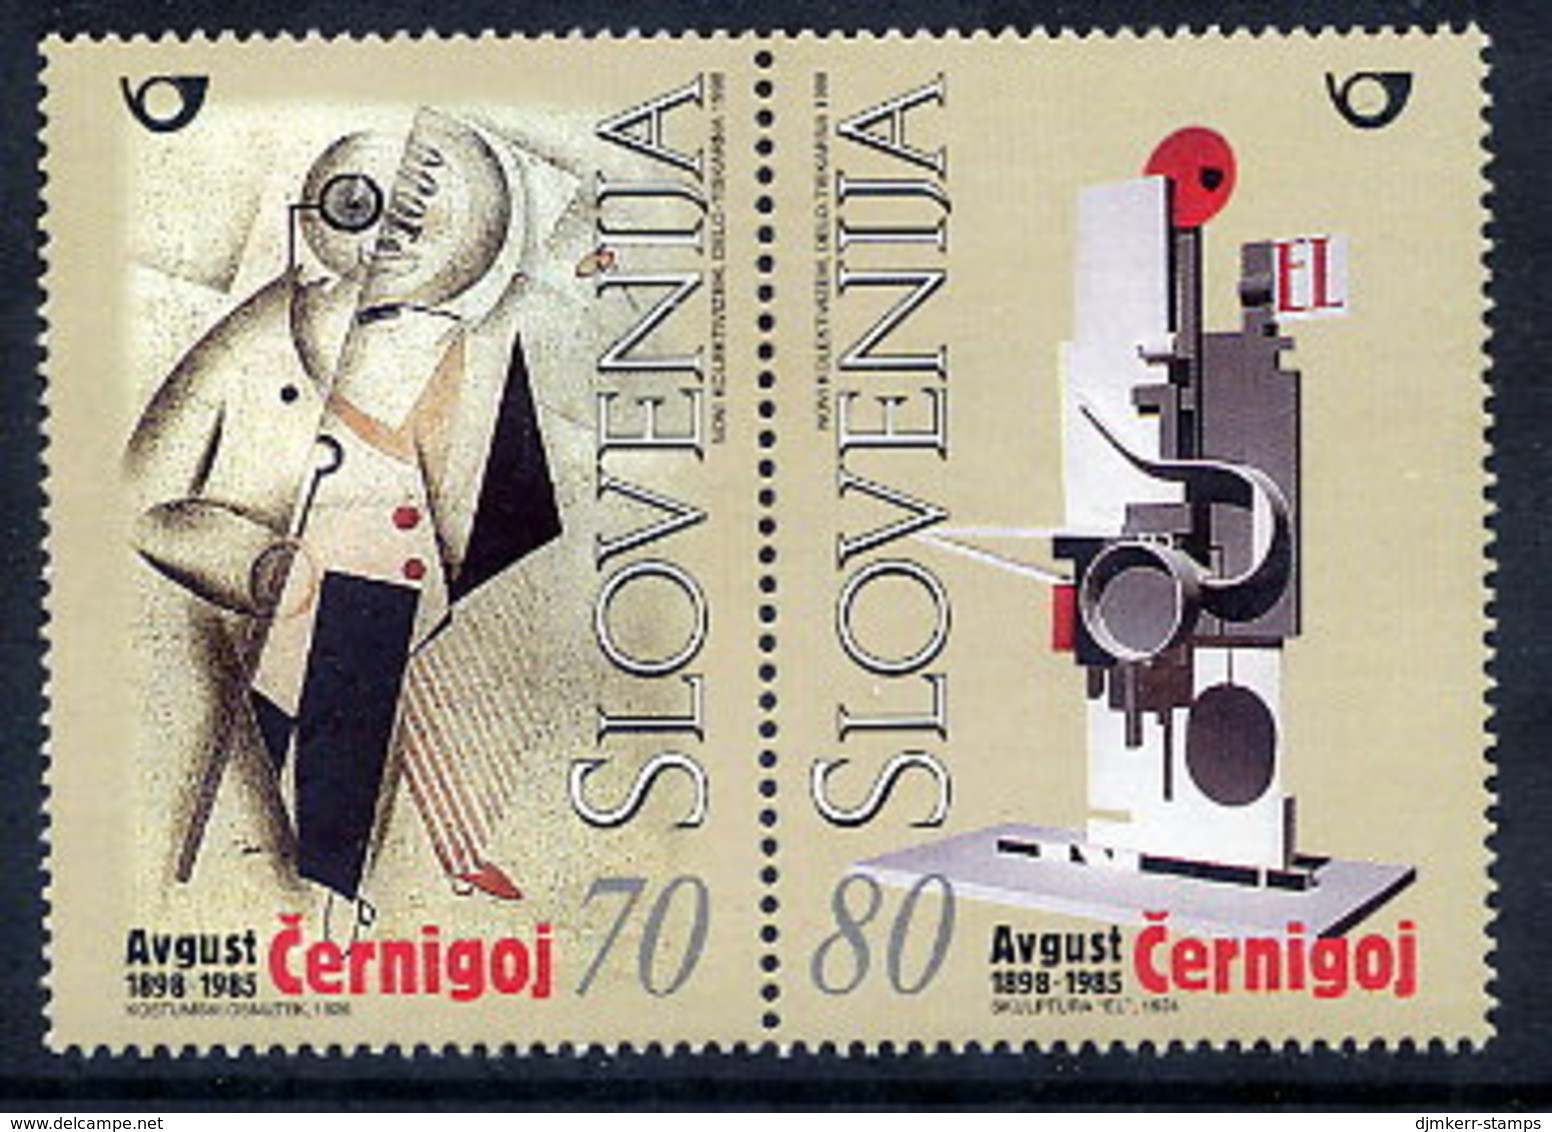 SLOVENIA 1998 August Cernigoj Centenary  MNH / **  Michel 237-38 - Slovenië